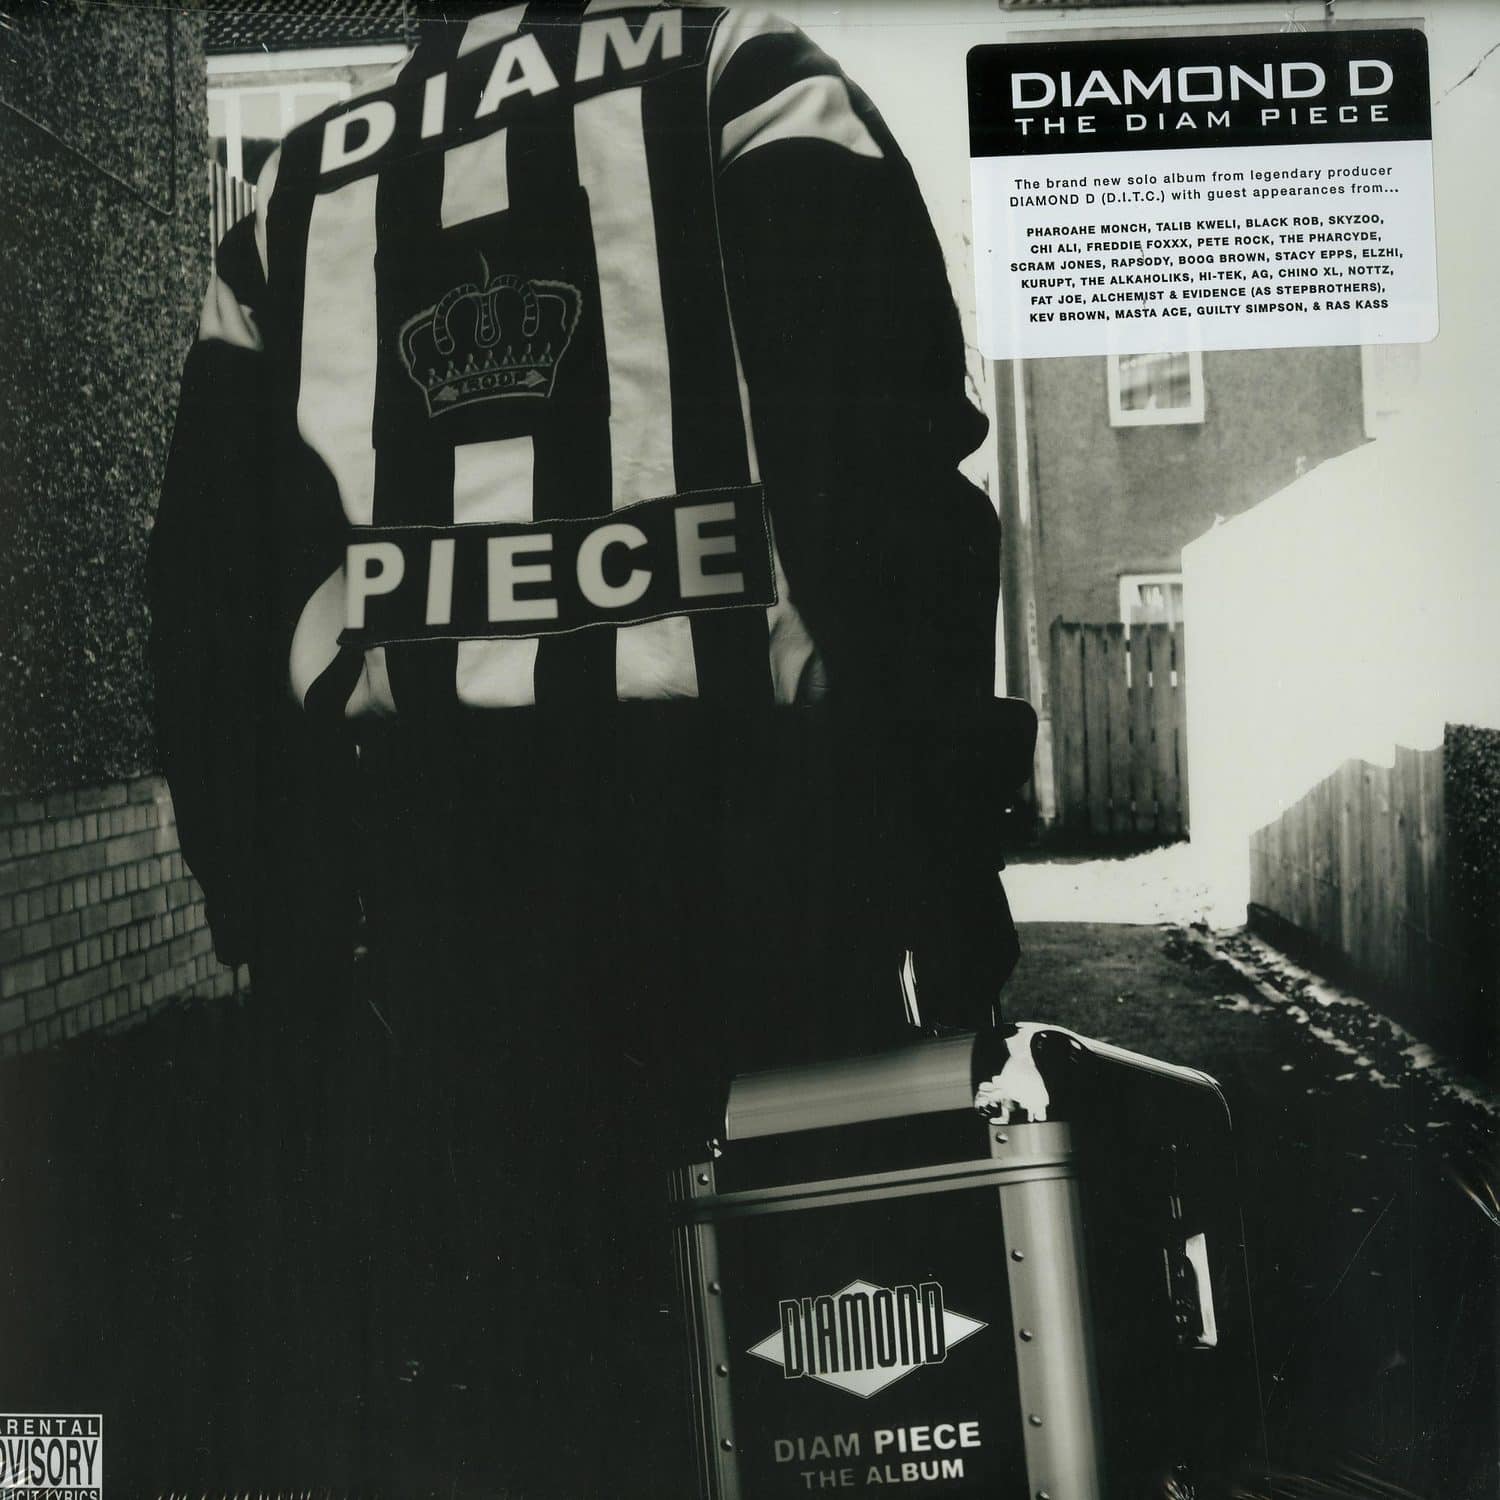 Diamond D - THE DIAM PIECE 